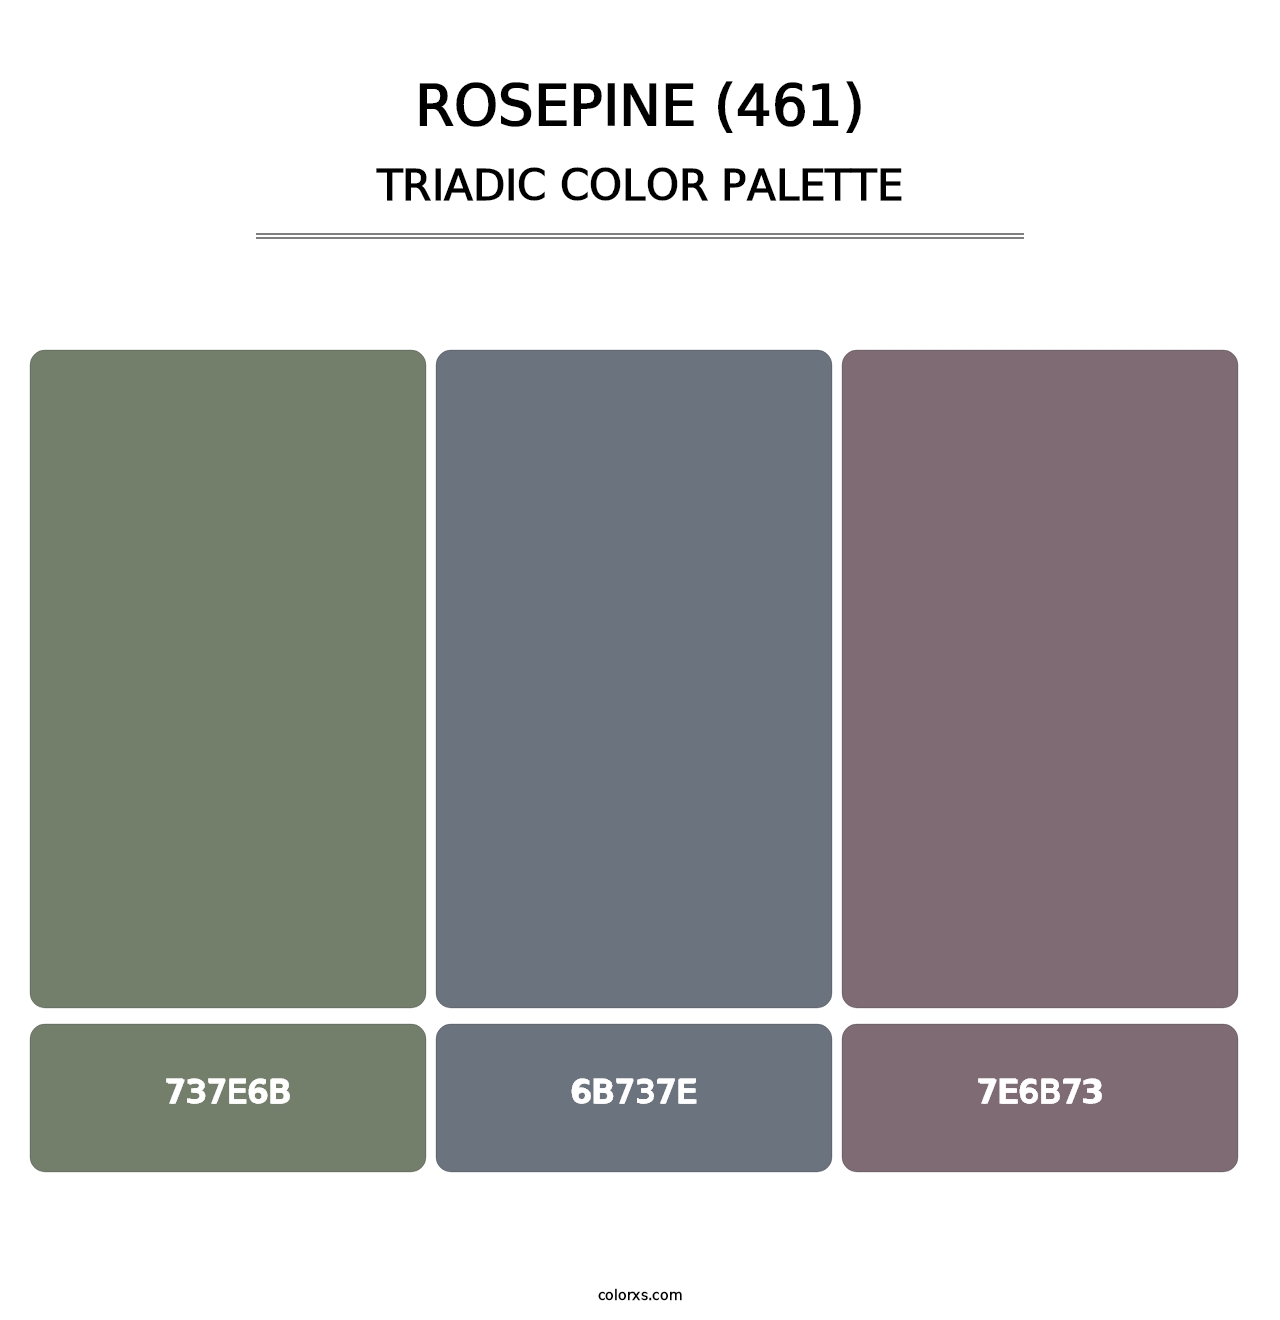 Rosepine (461) - Triadic Color Palette